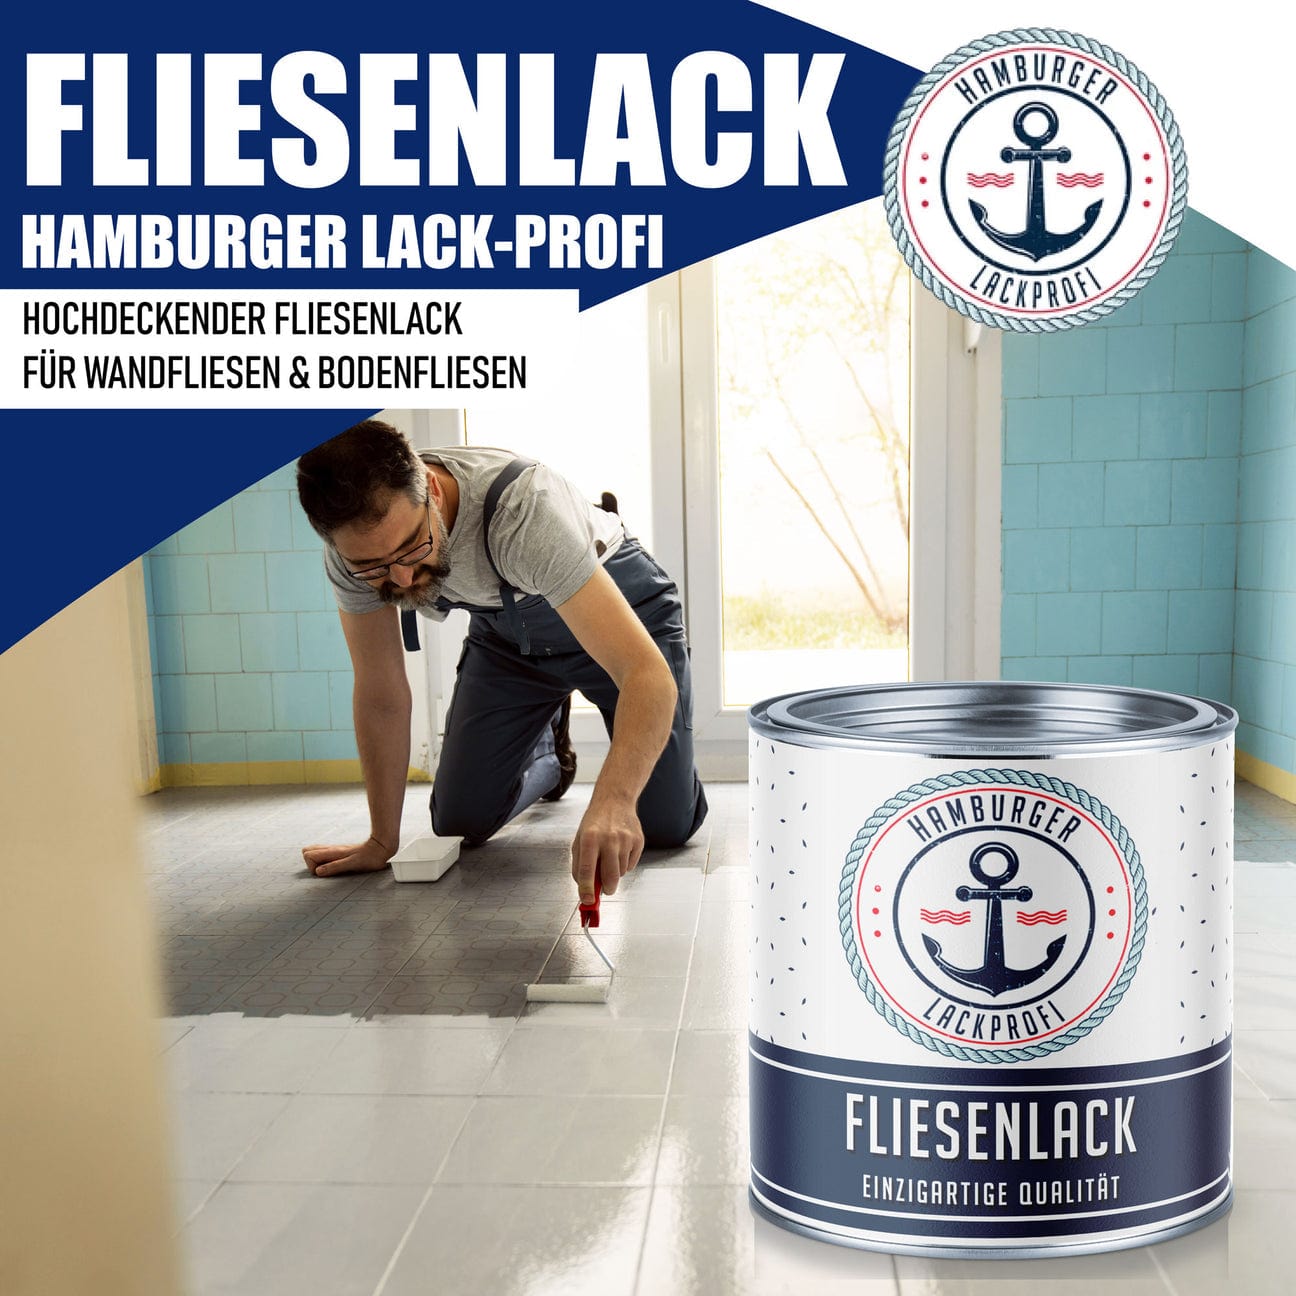 Hamburger Lack-Profi Hamburger Lack-Profi Fliesenlack Türkisgrün RAL 6016 - hochdeckende Fliesenfarbe Grün